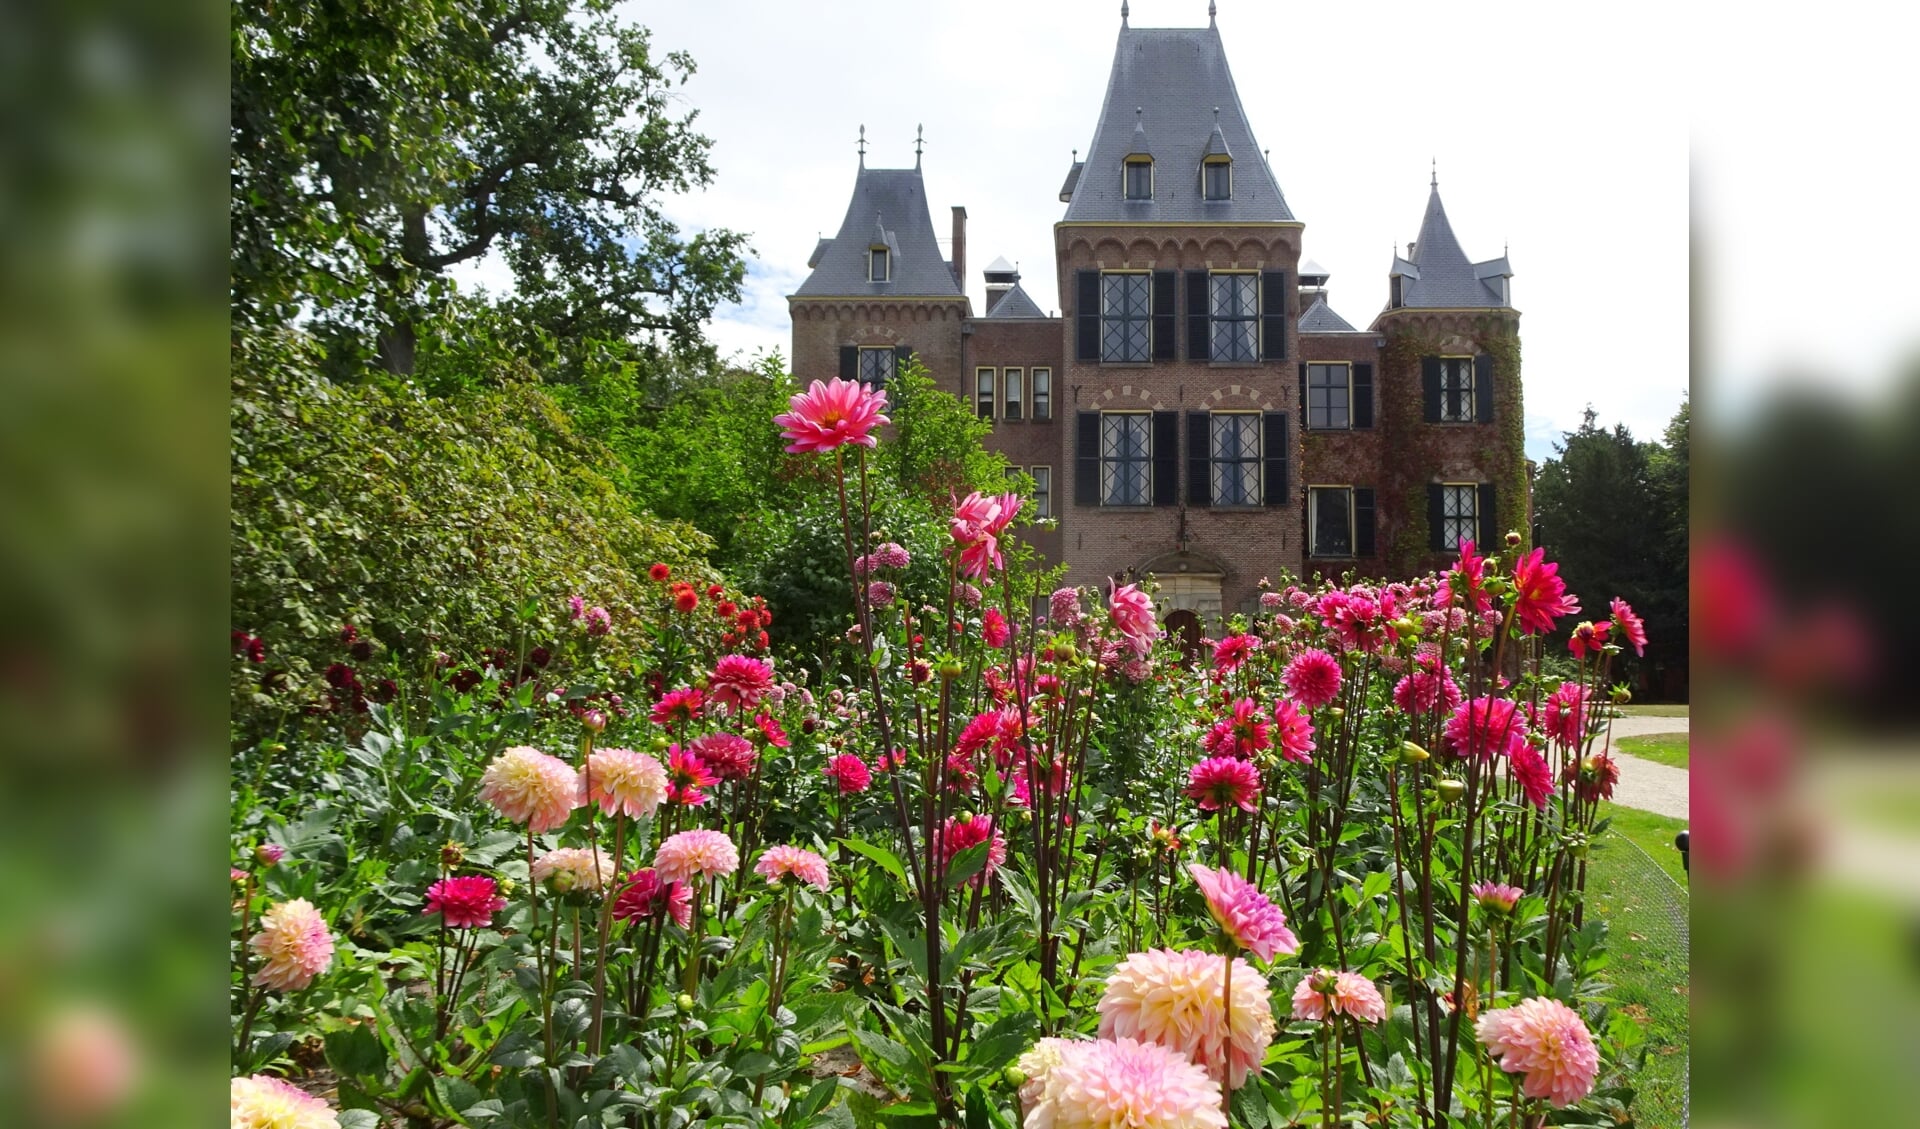 Vorig jaar waren dahlia's ook in vele soorten te bewonderen in de tuin van het kasteel. 